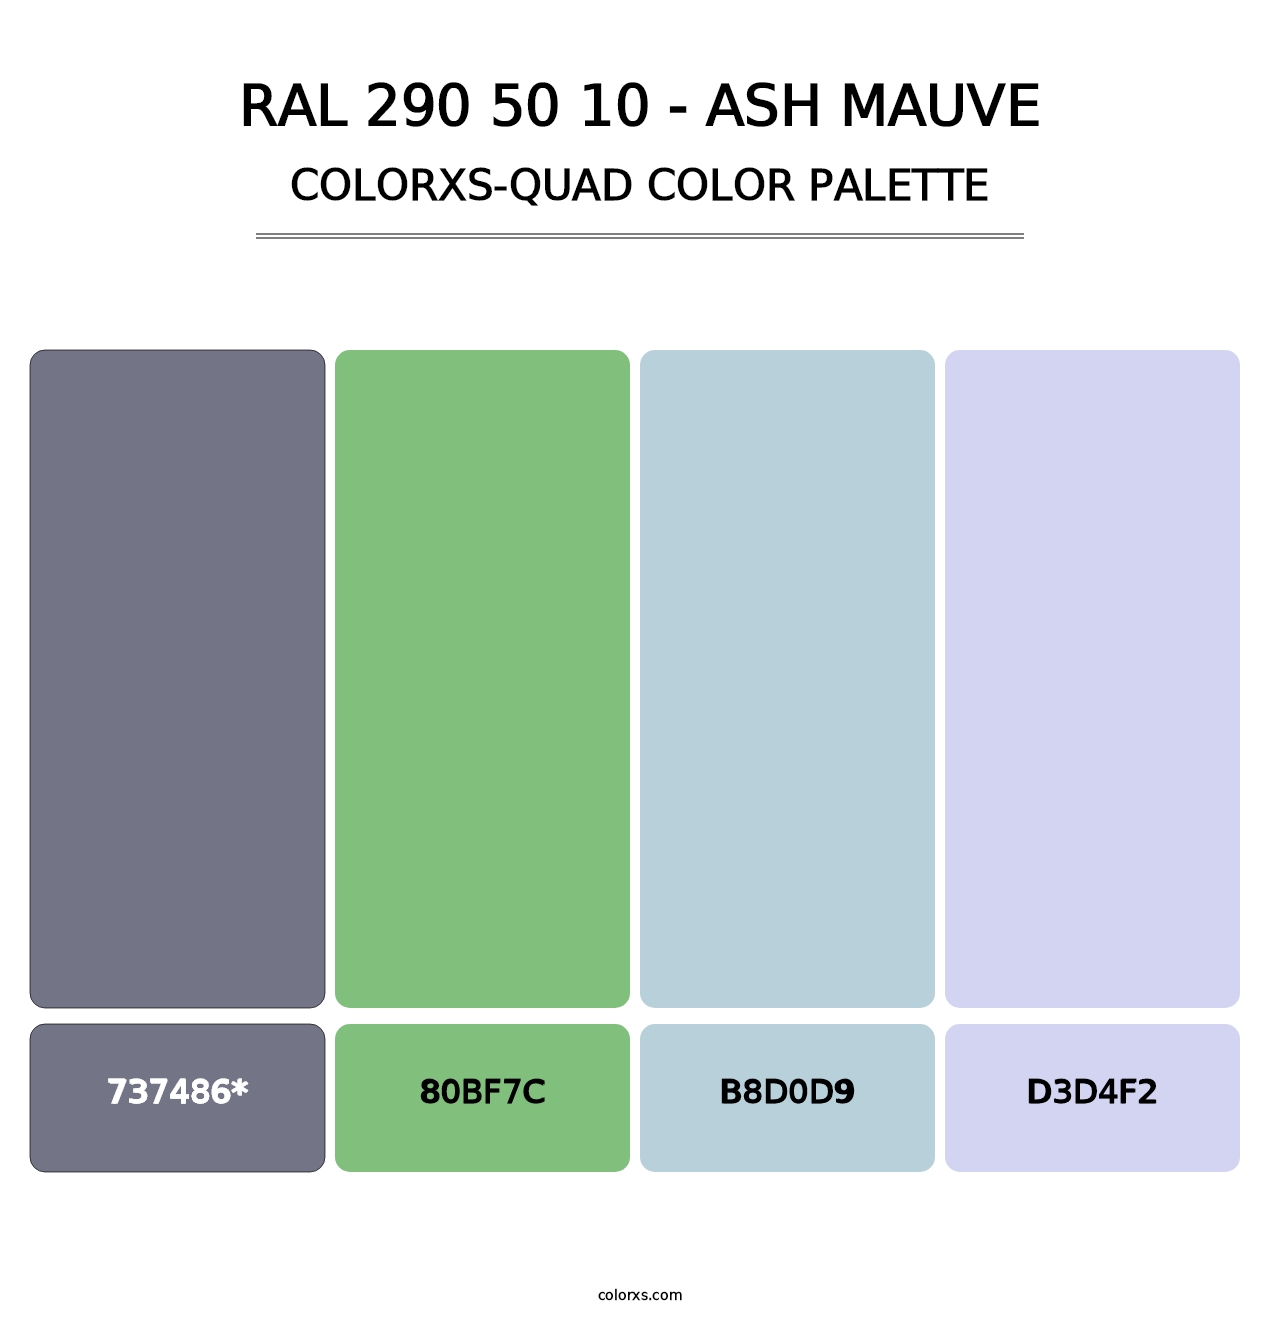 RAL 290 50 10 - Ash Mauve - Colorxs Quad Palette